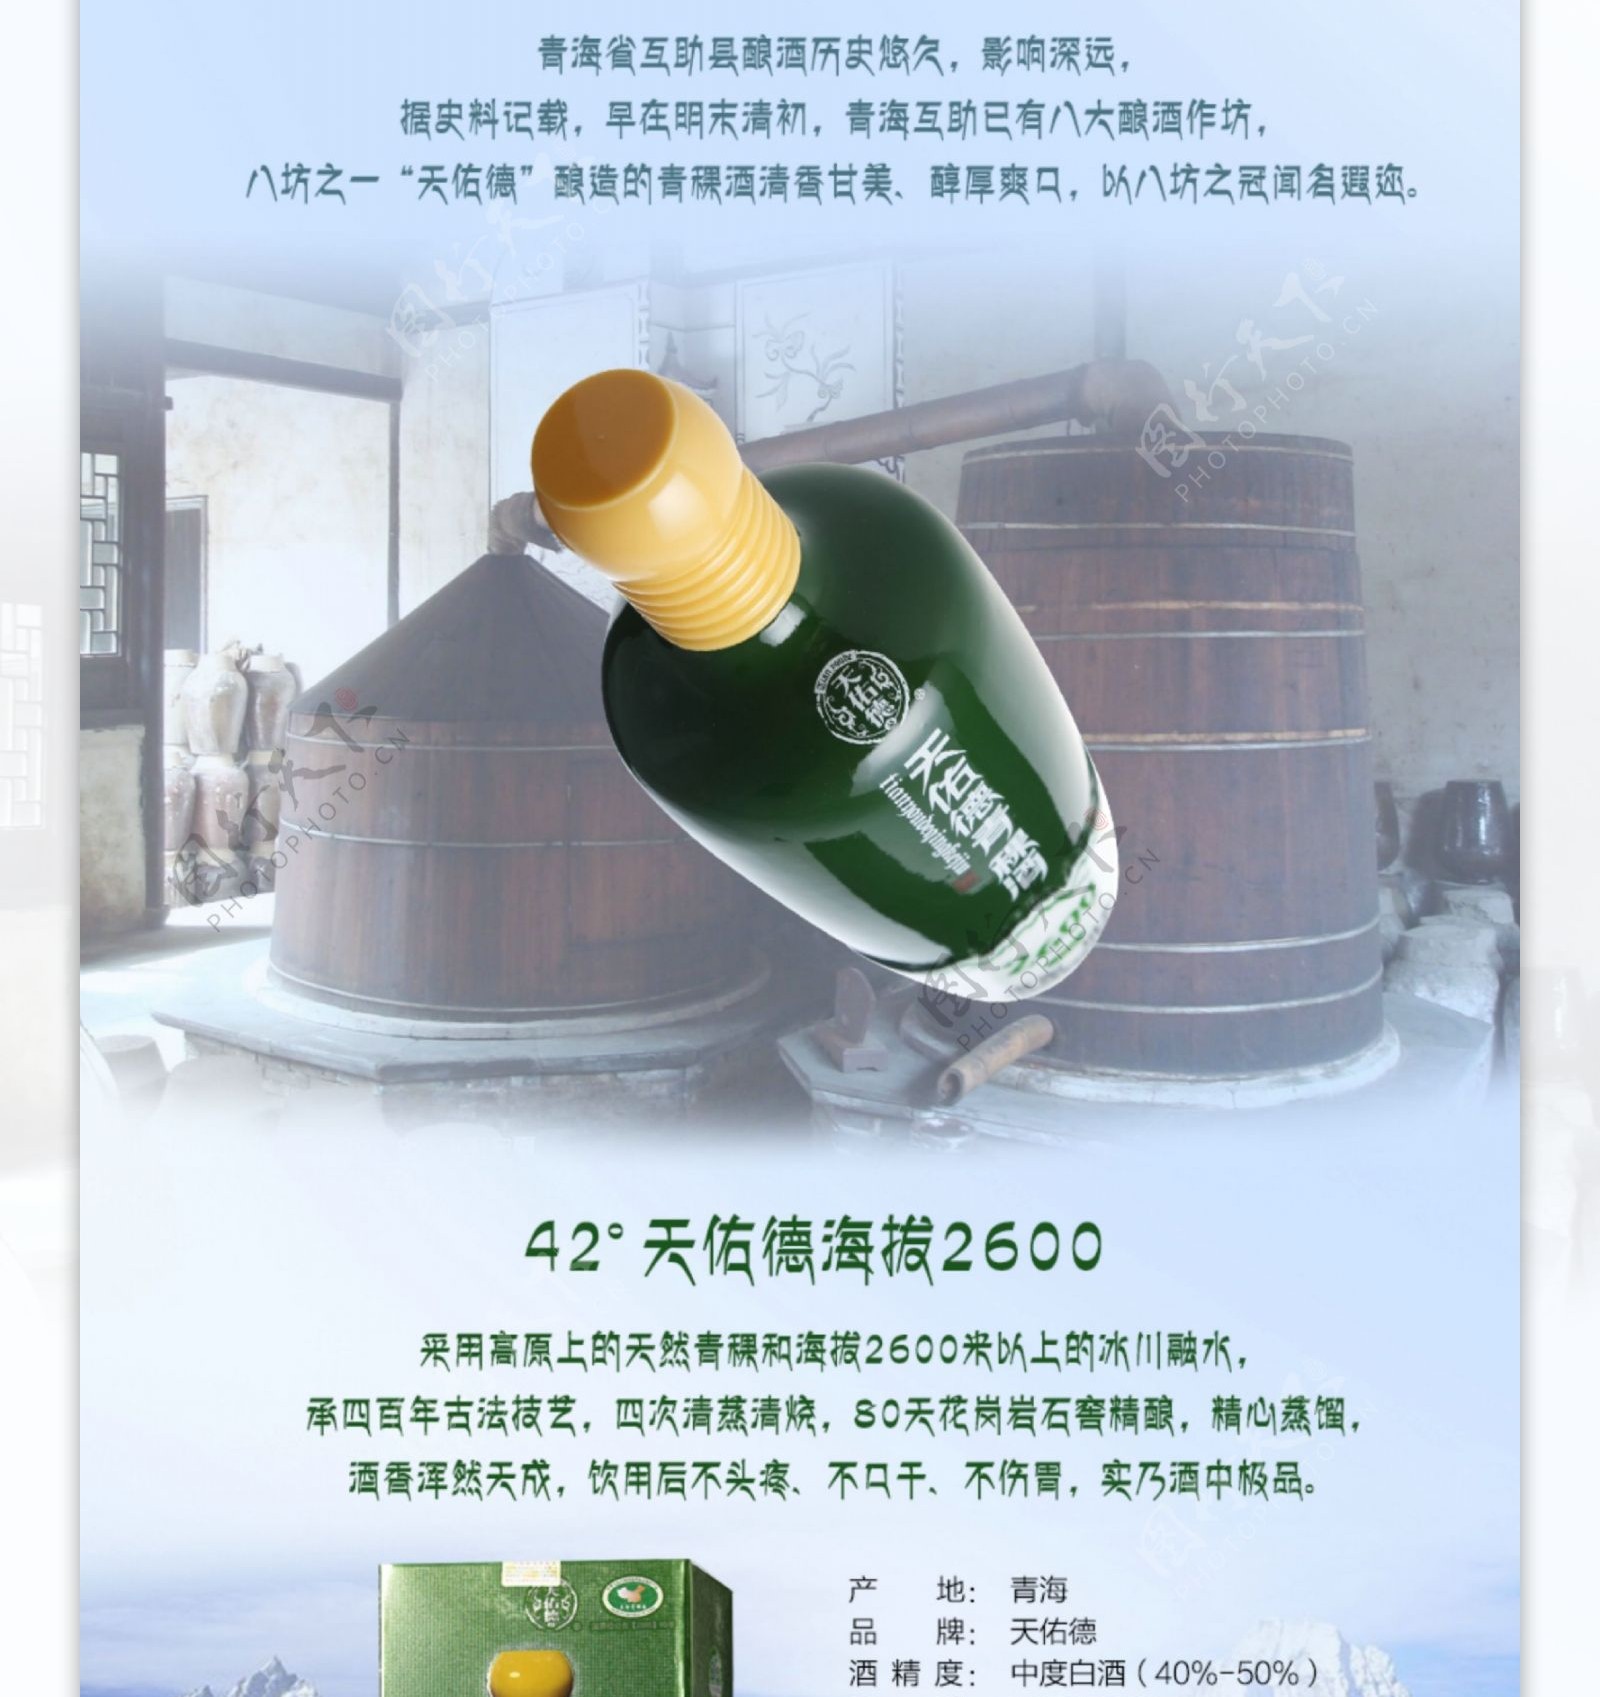 天猫详情页天佑德青稞酒2600